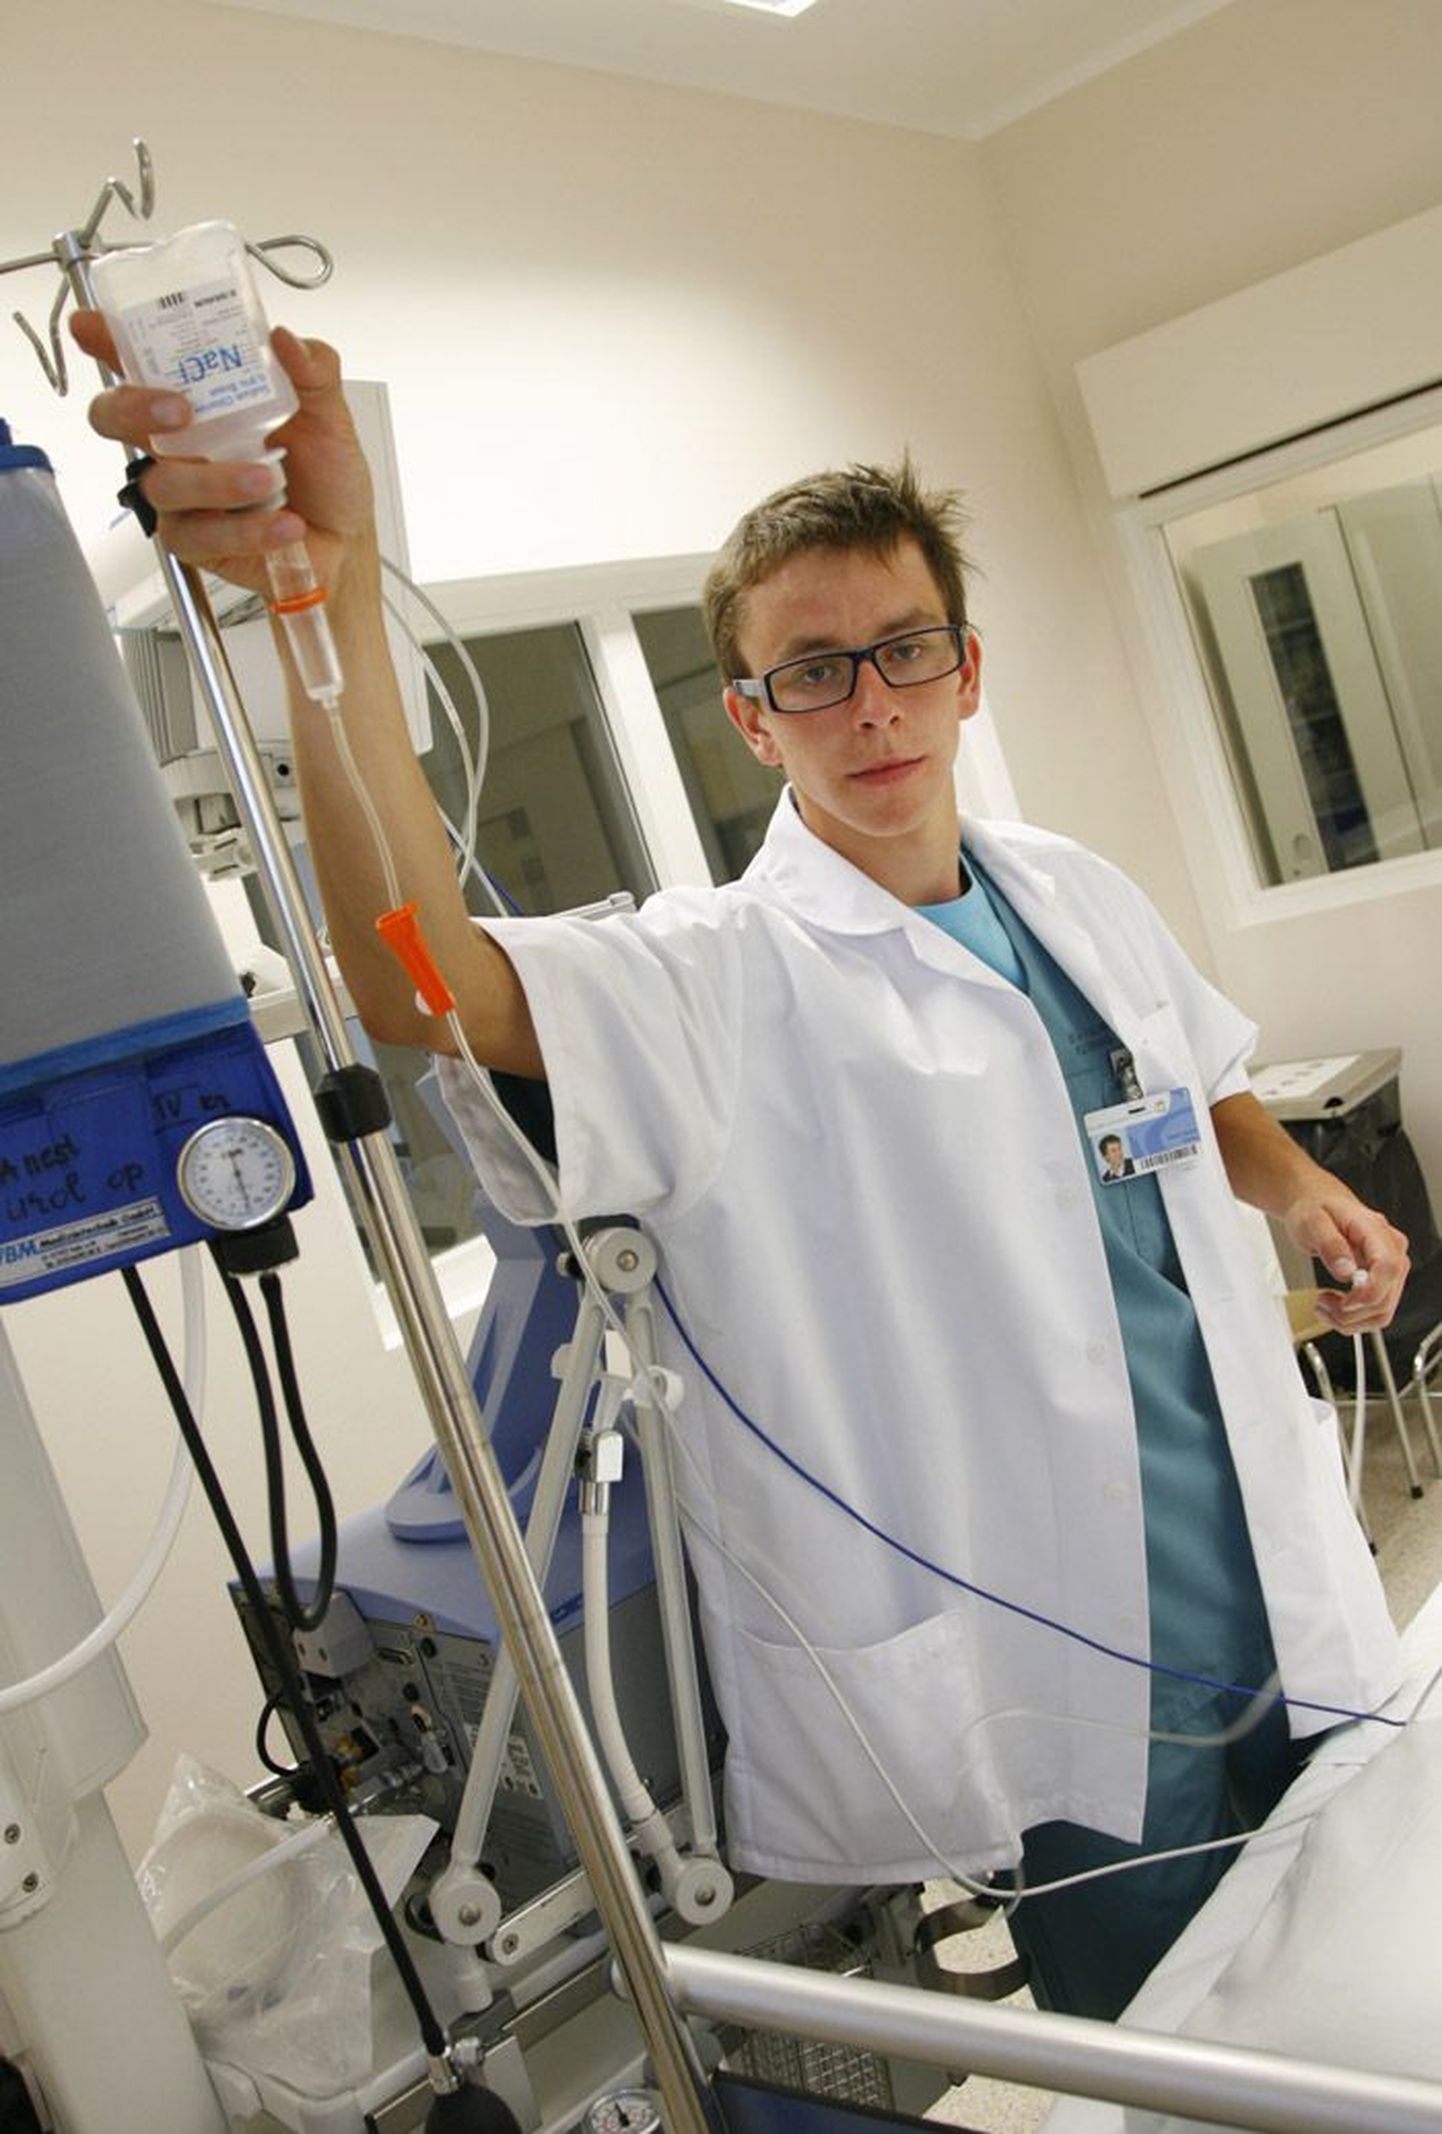 Мартин Манд, осваивающий профессию медбрата, практические навыки получает в отделении интенсивной терапии Восточно-Таллиннской центральной больницы.